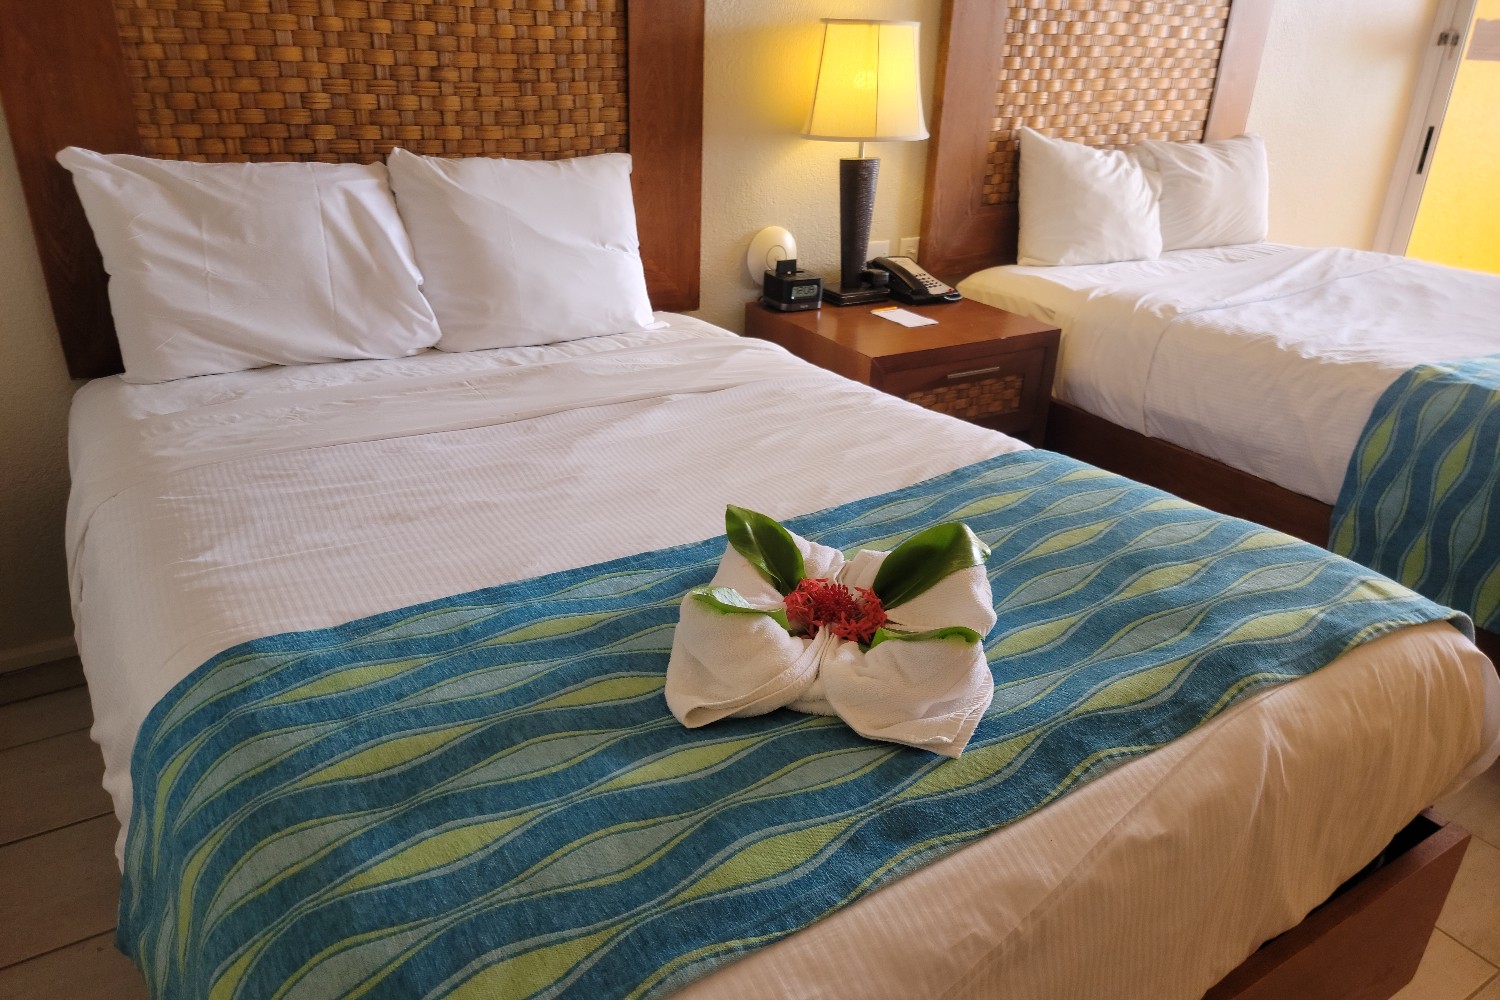 A hotel room at the Divi Flamingo Beach Resort in Kralendijk, Bonaire, Caribbean Netherlands.